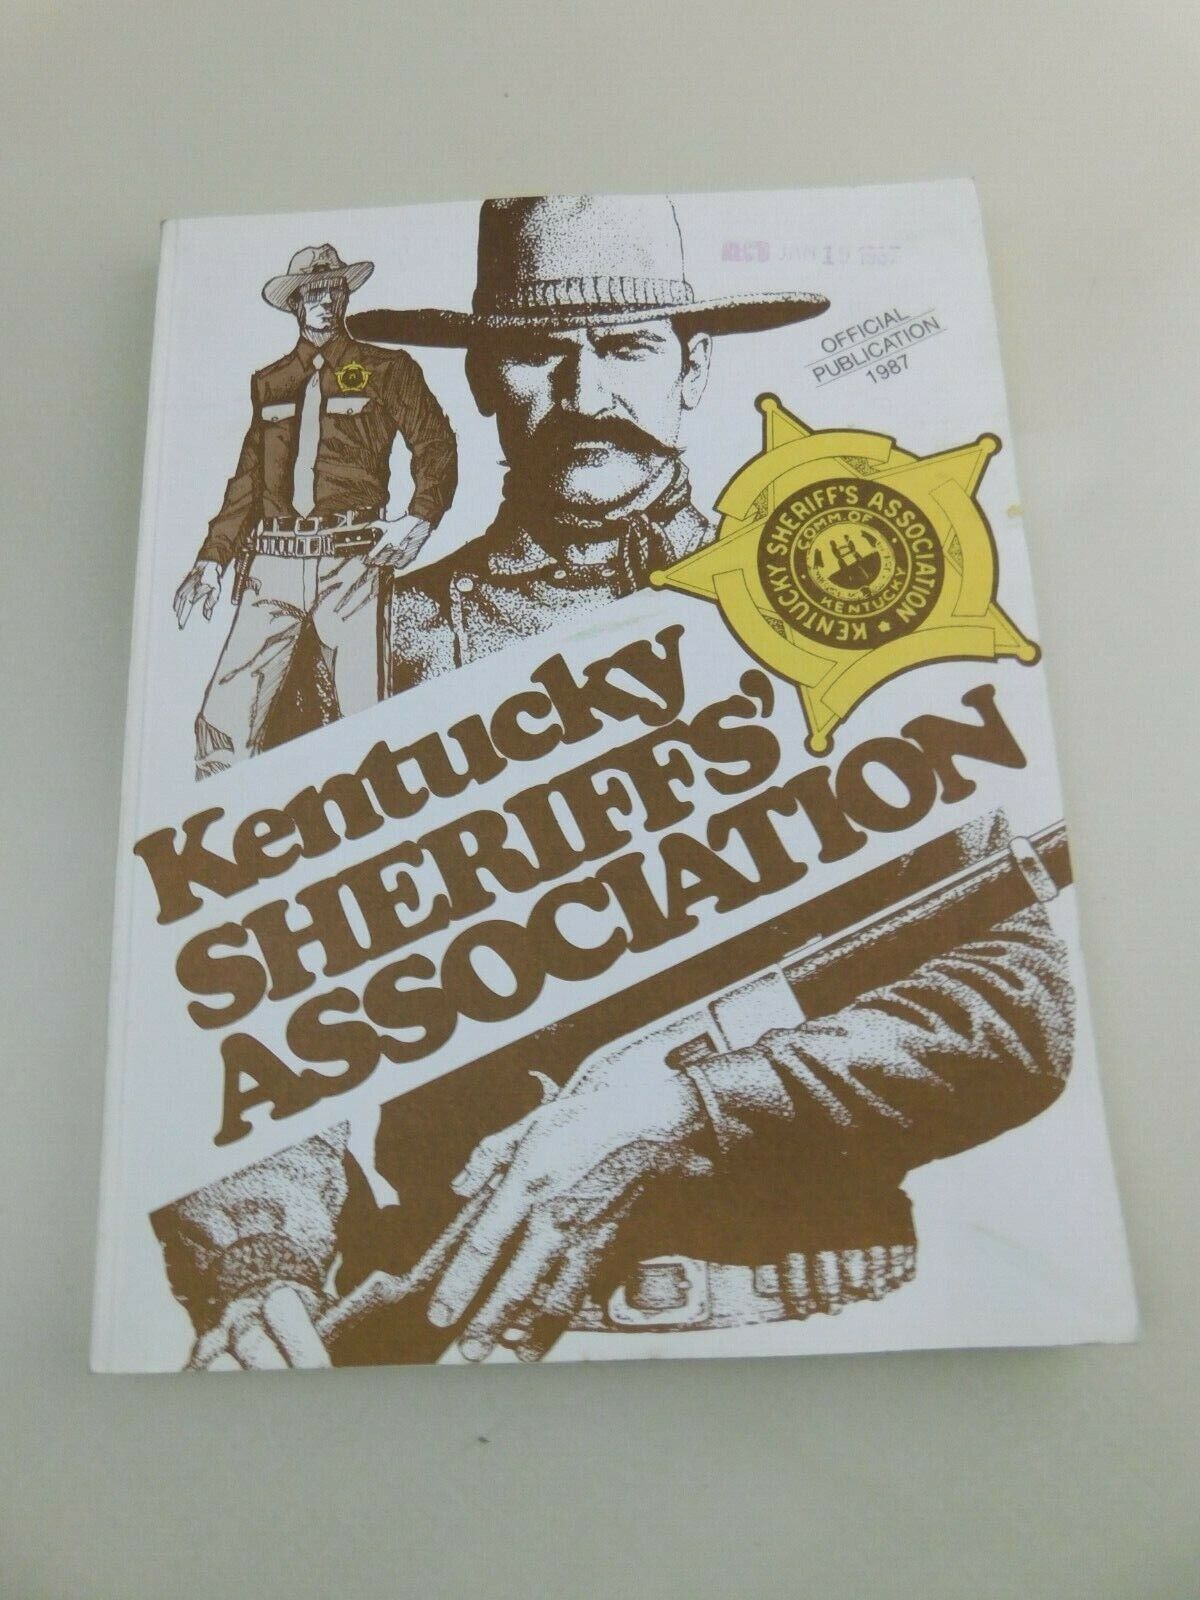 1987 SHERIFFS ASSOCIATION Official Publication